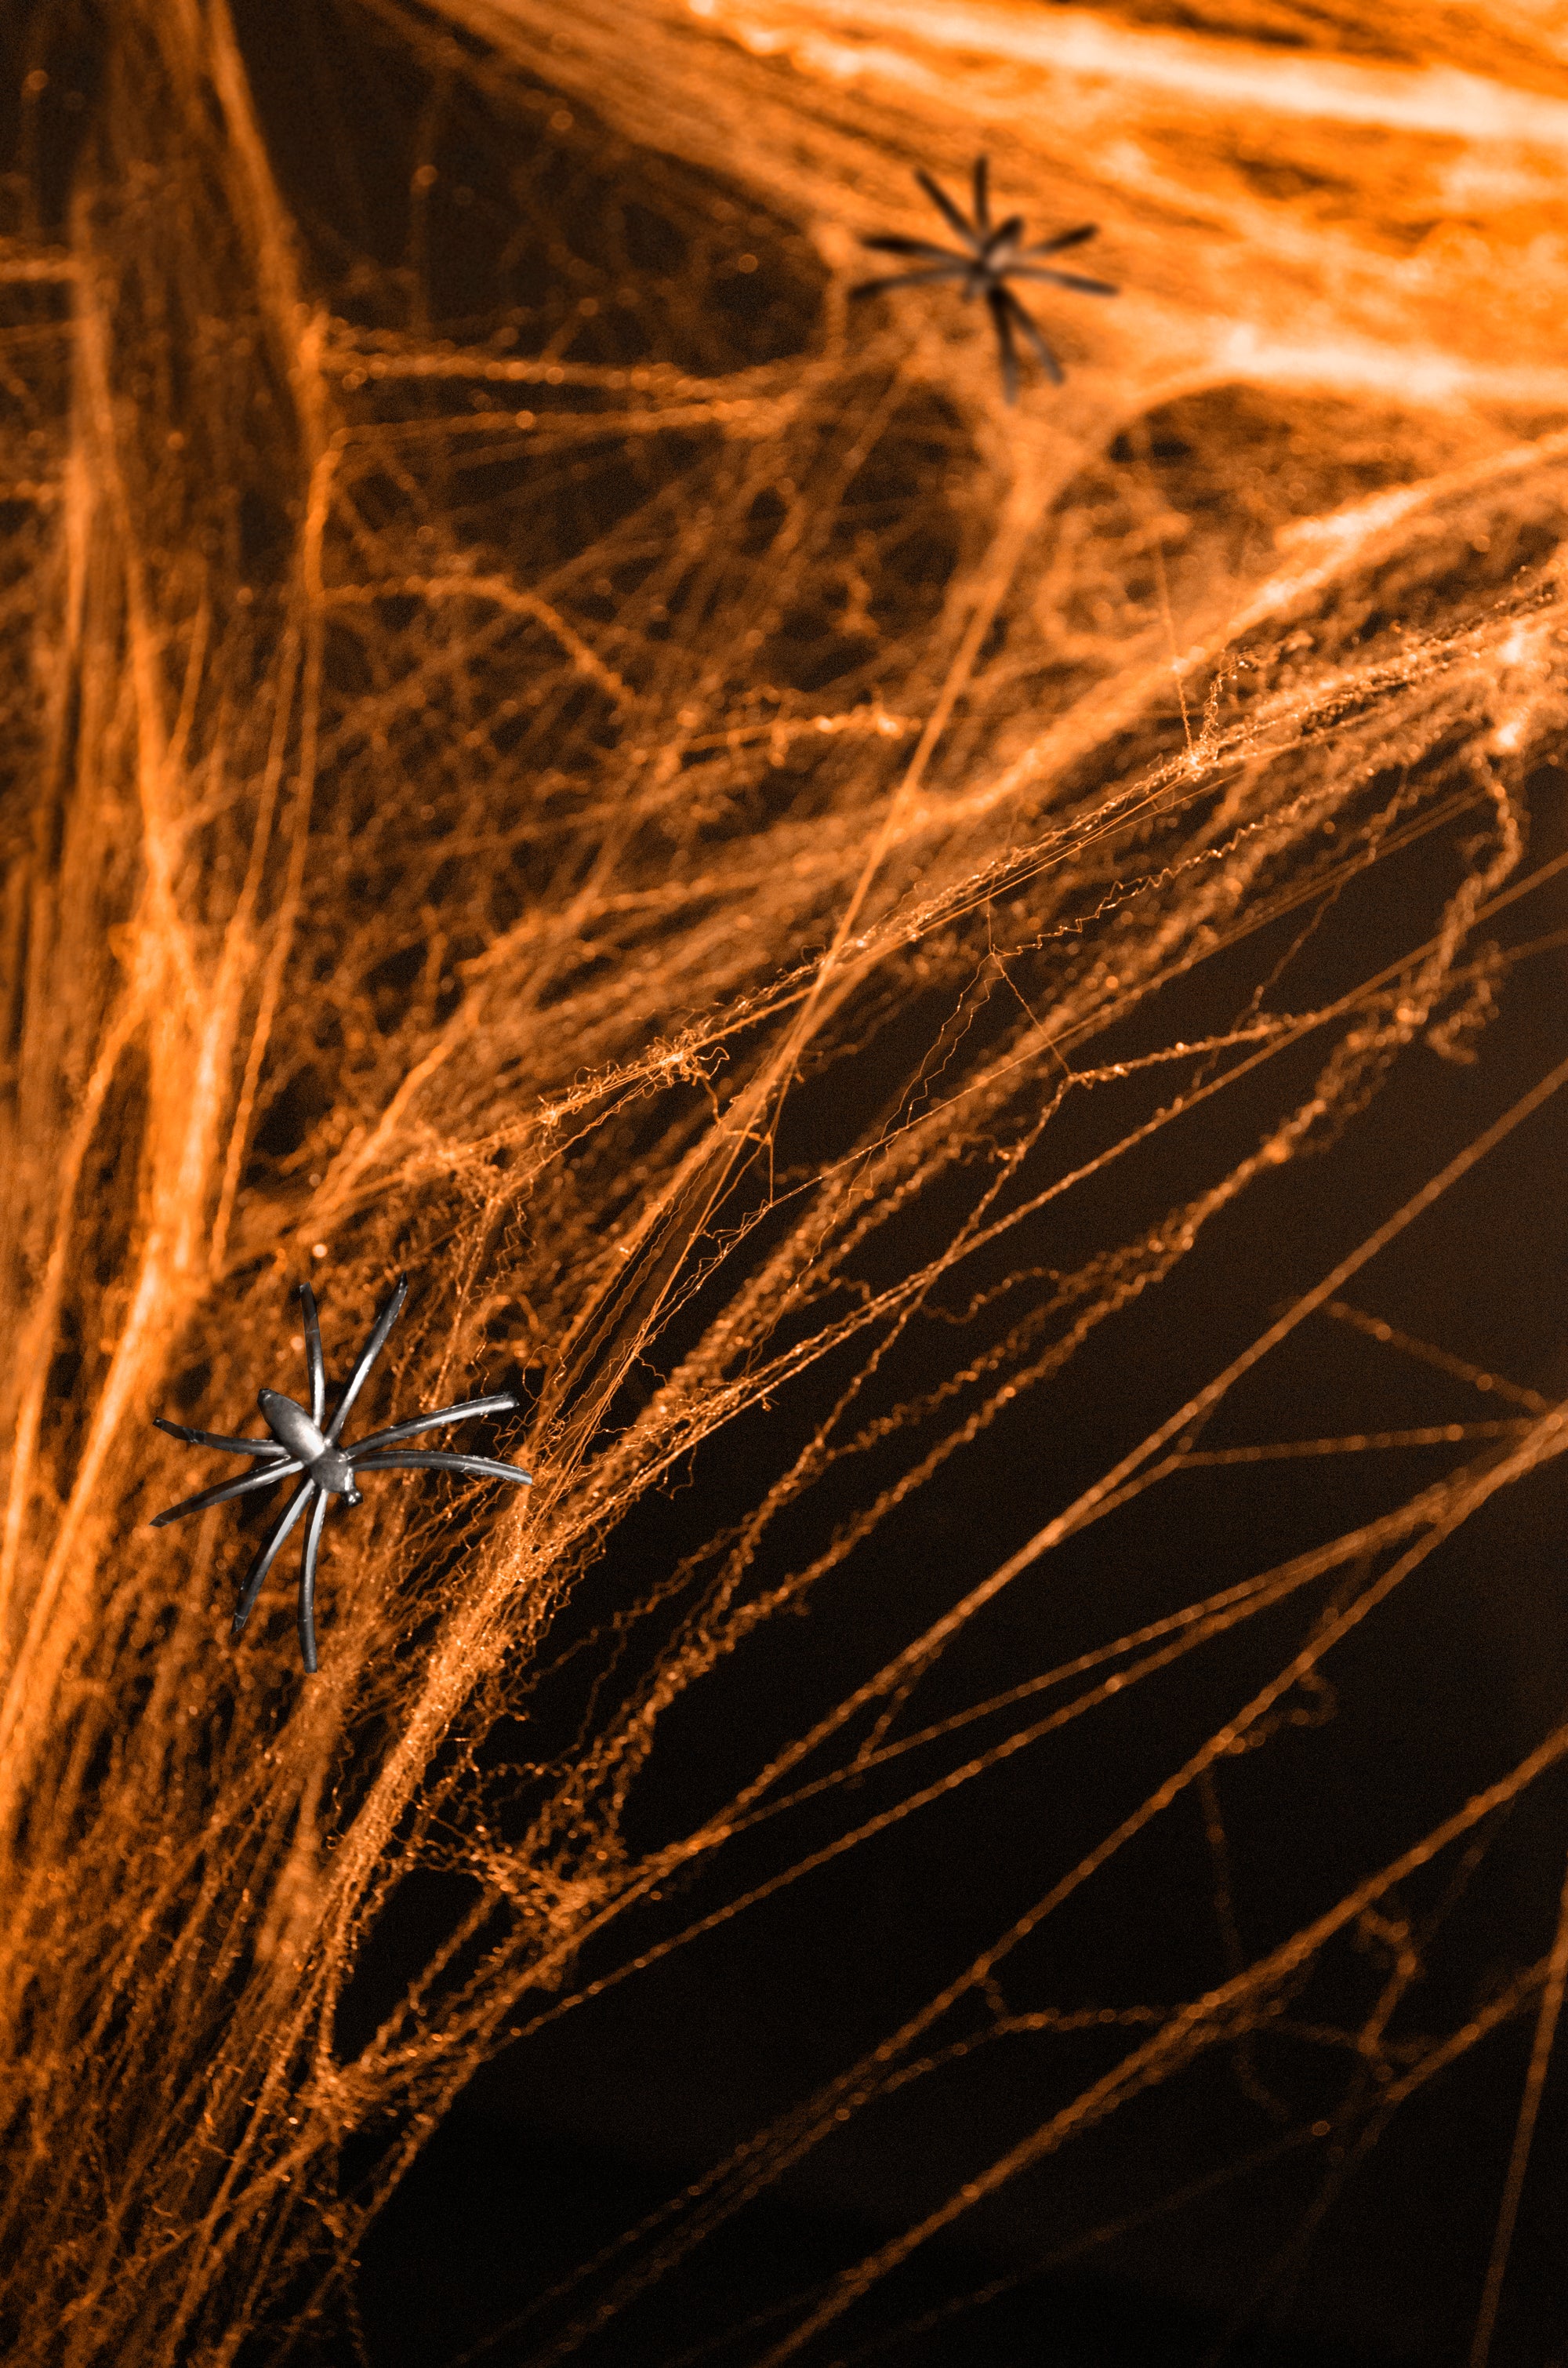 Orange Spider Web Halloween Decoration